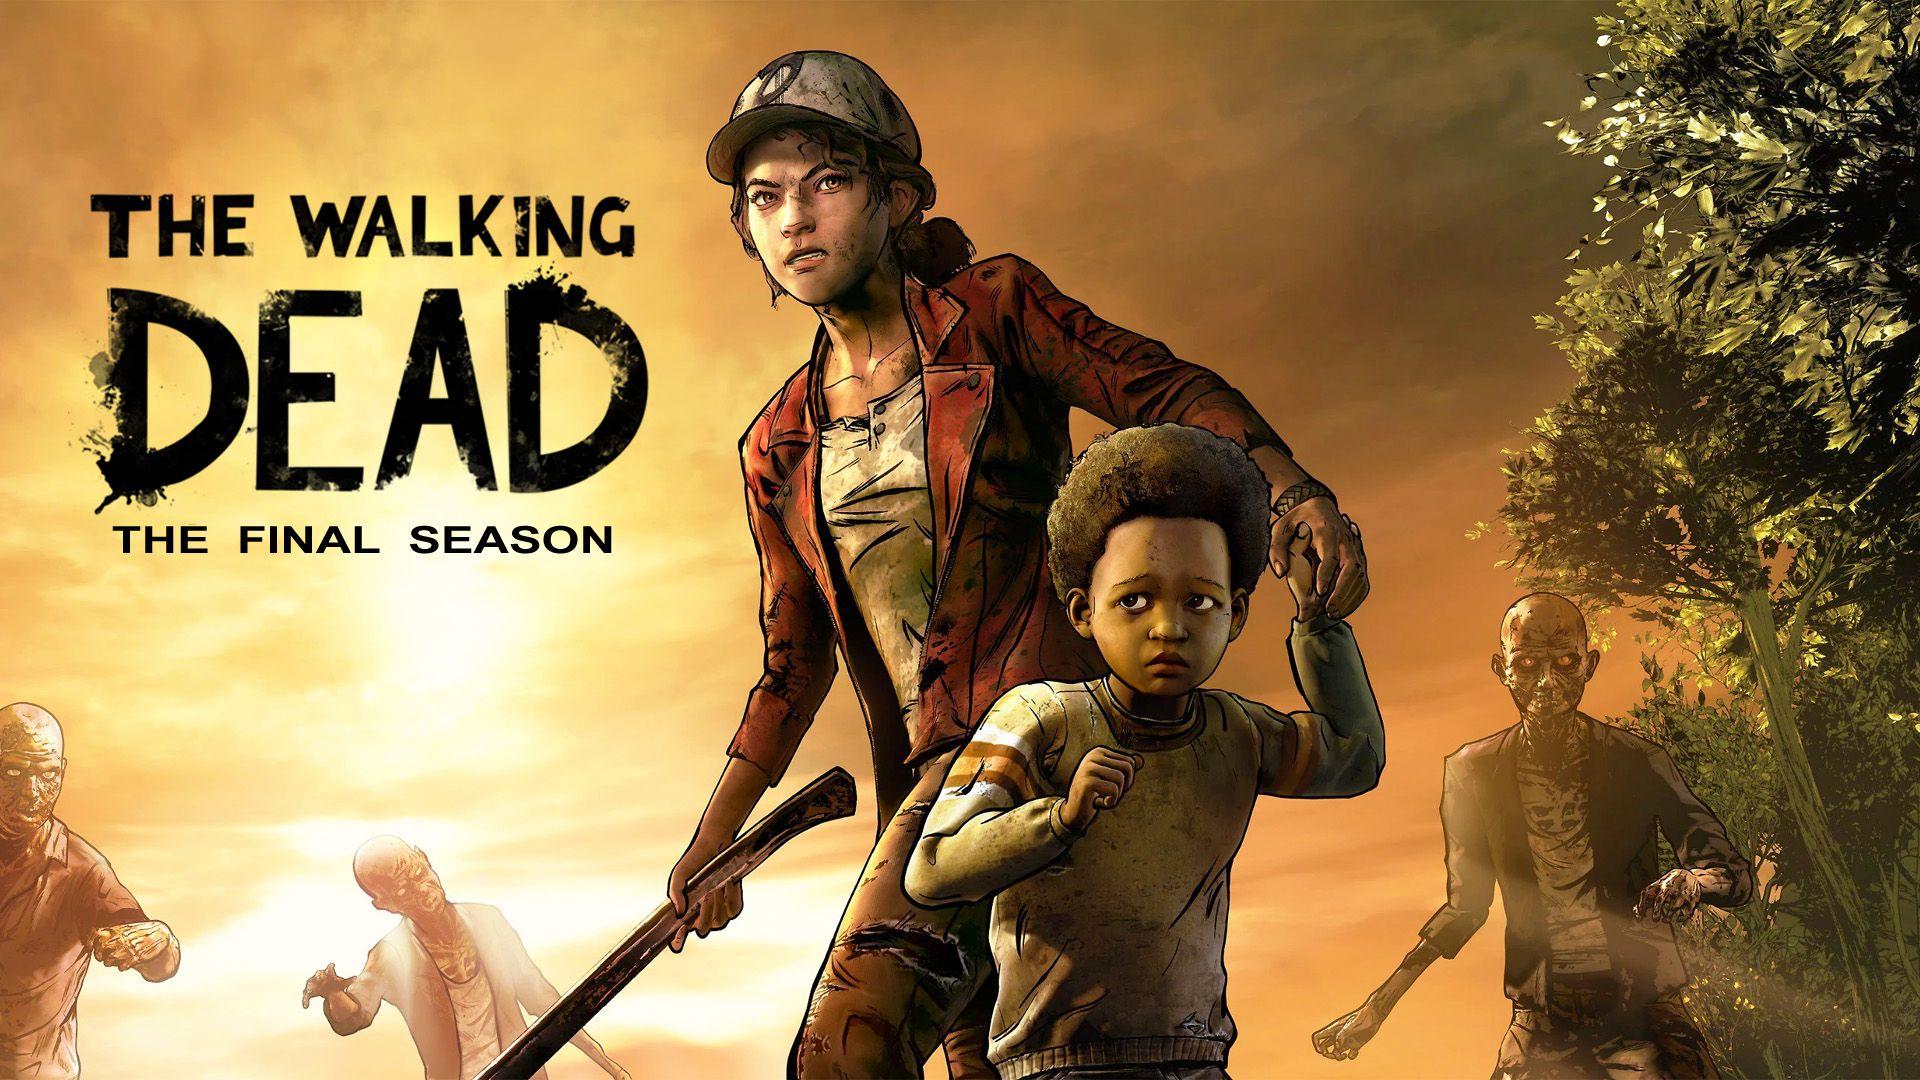 The Walking Dead Season 4 Wallpaper 1920x1080